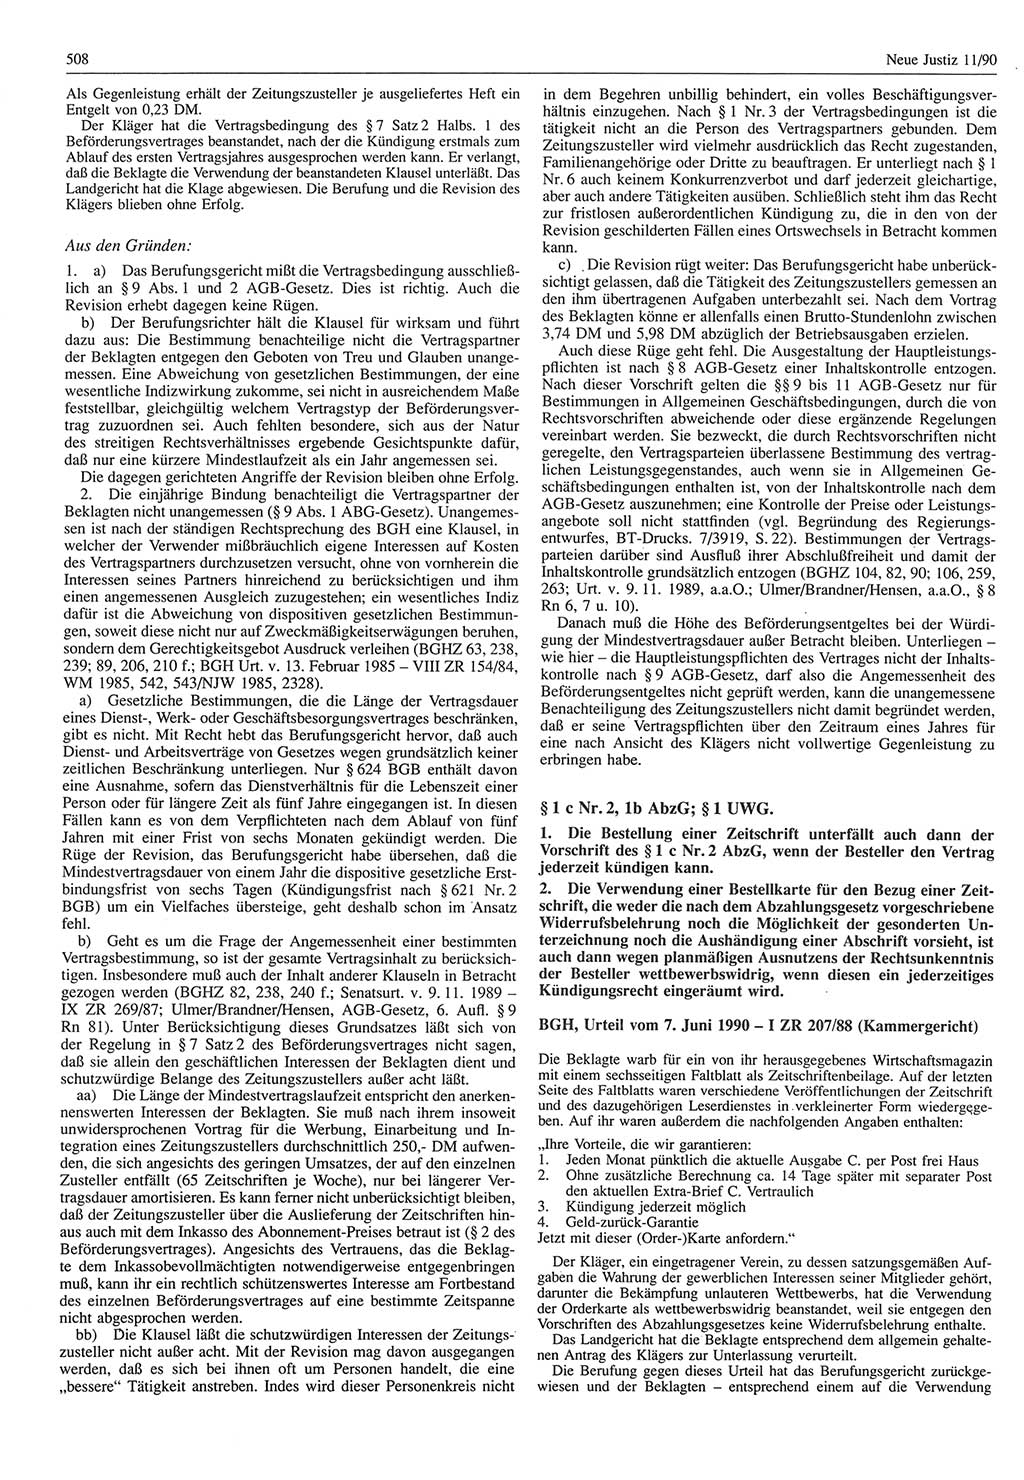 Neue Justiz (NJ), Zeitschrift für Rechtsetzung und Rechtsanwendung [Deutsche Demokratische Republik (DDR)], 44. Jahrgang 1990, Seite 508 (NJ DDR 1990, S. 508)